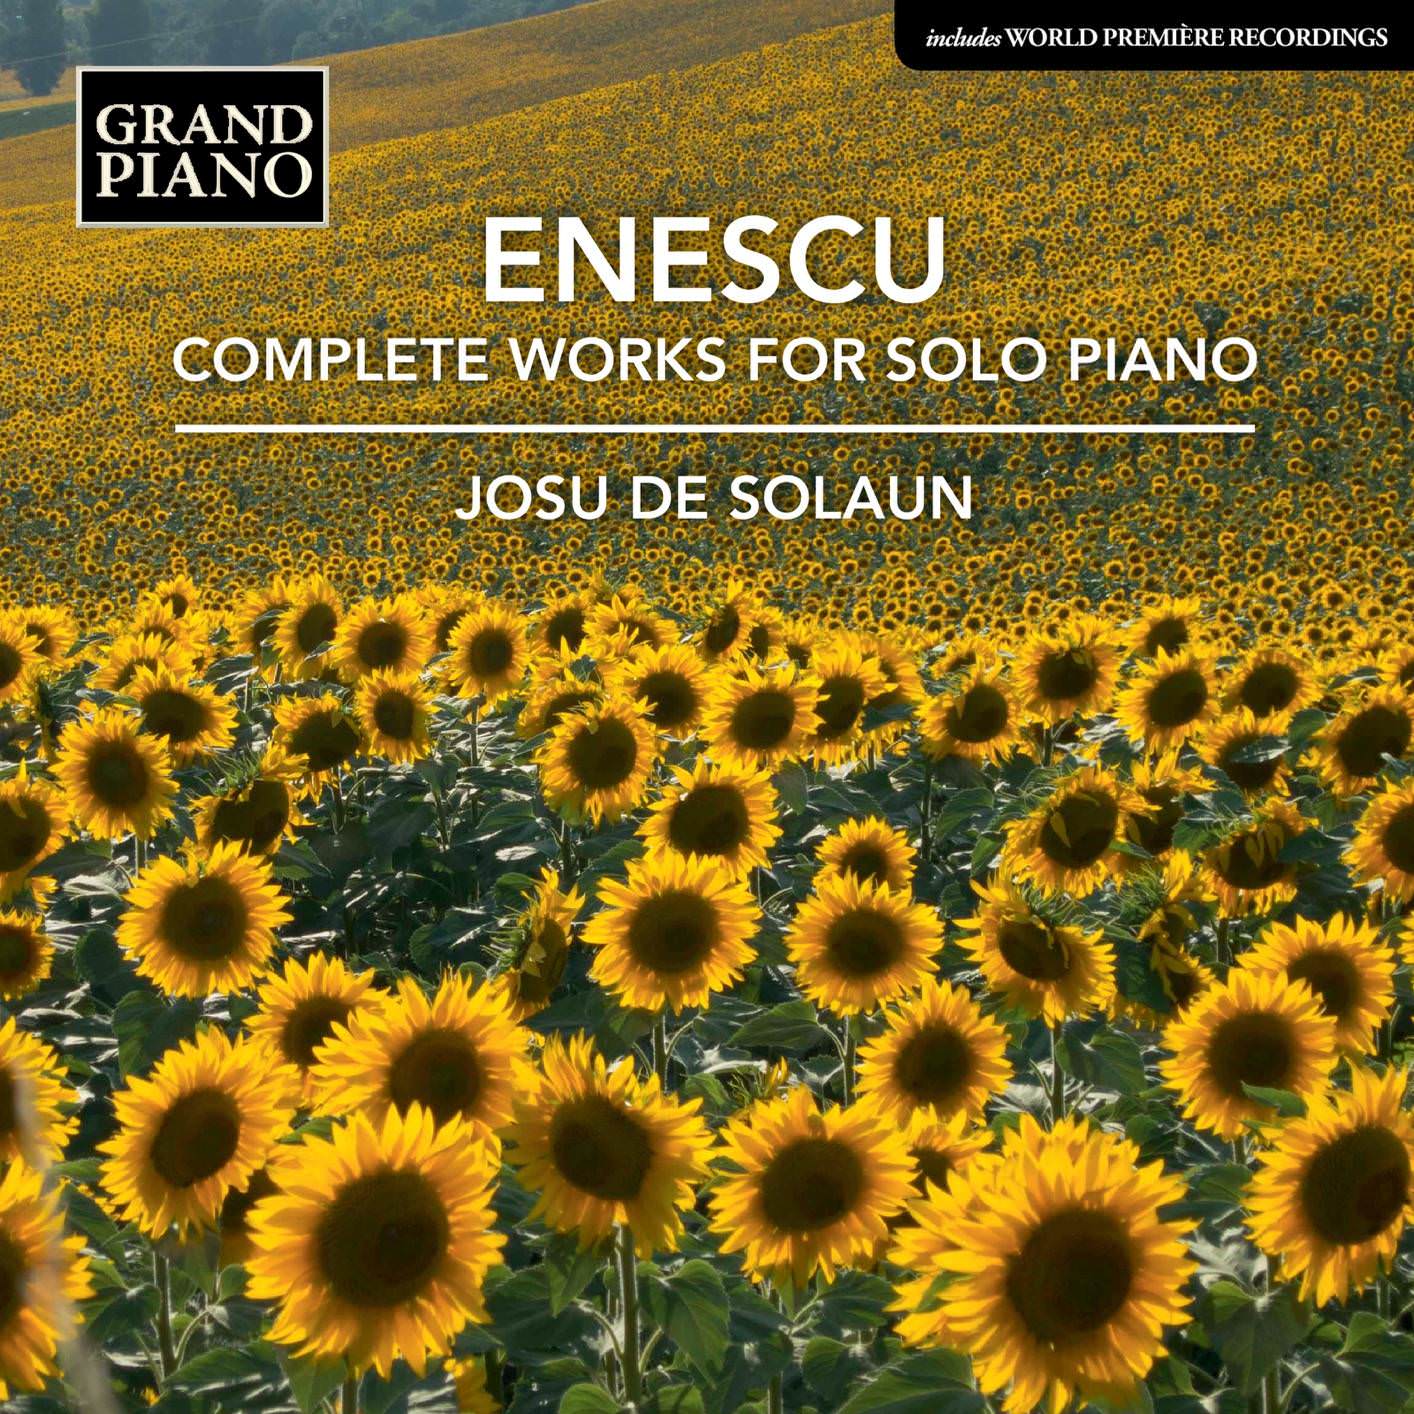 Josu de Solaun - Enescu: Complete Works for Solo Piano (2018) [FLAC 24bit/96kHz]